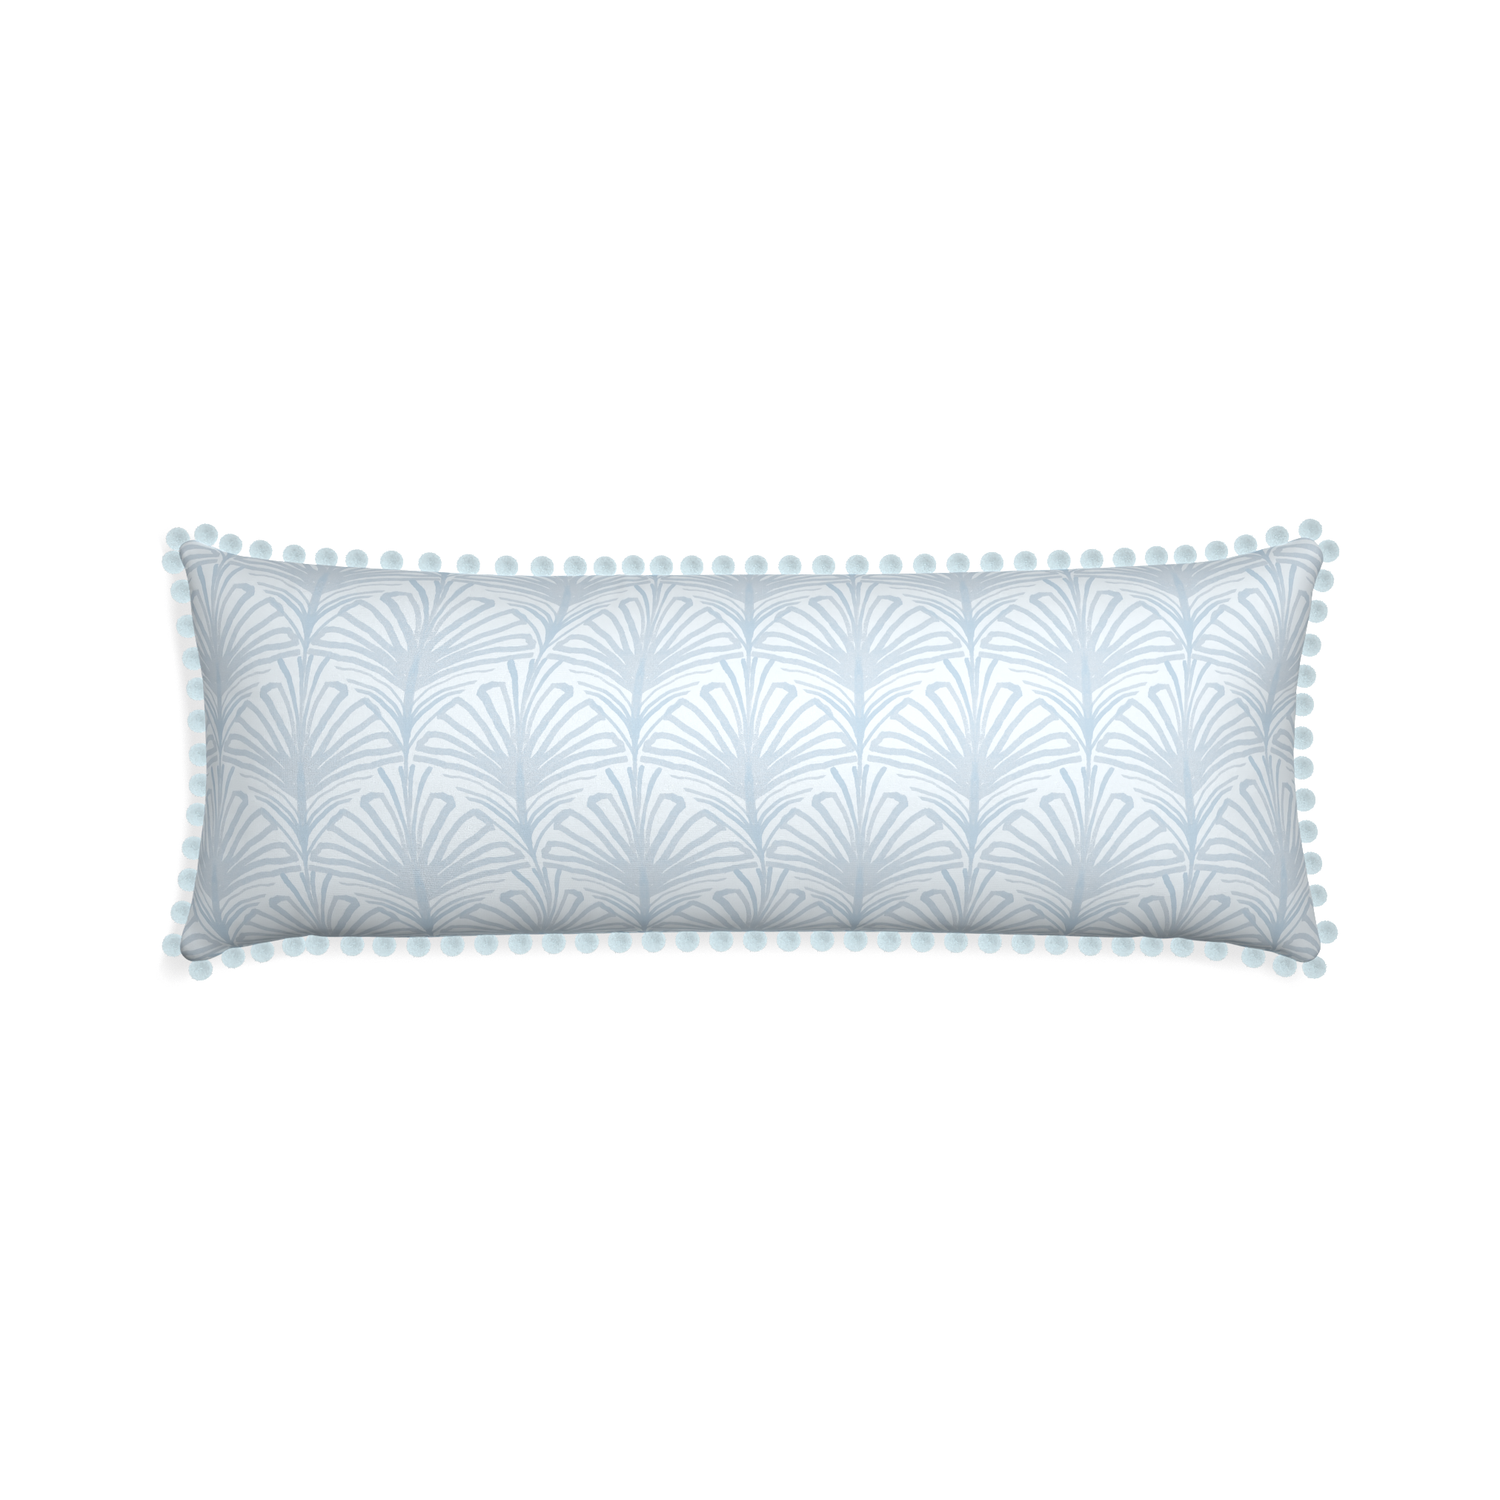 Xl-lumbar suzy sky custom pillow with powder pom pom on white background